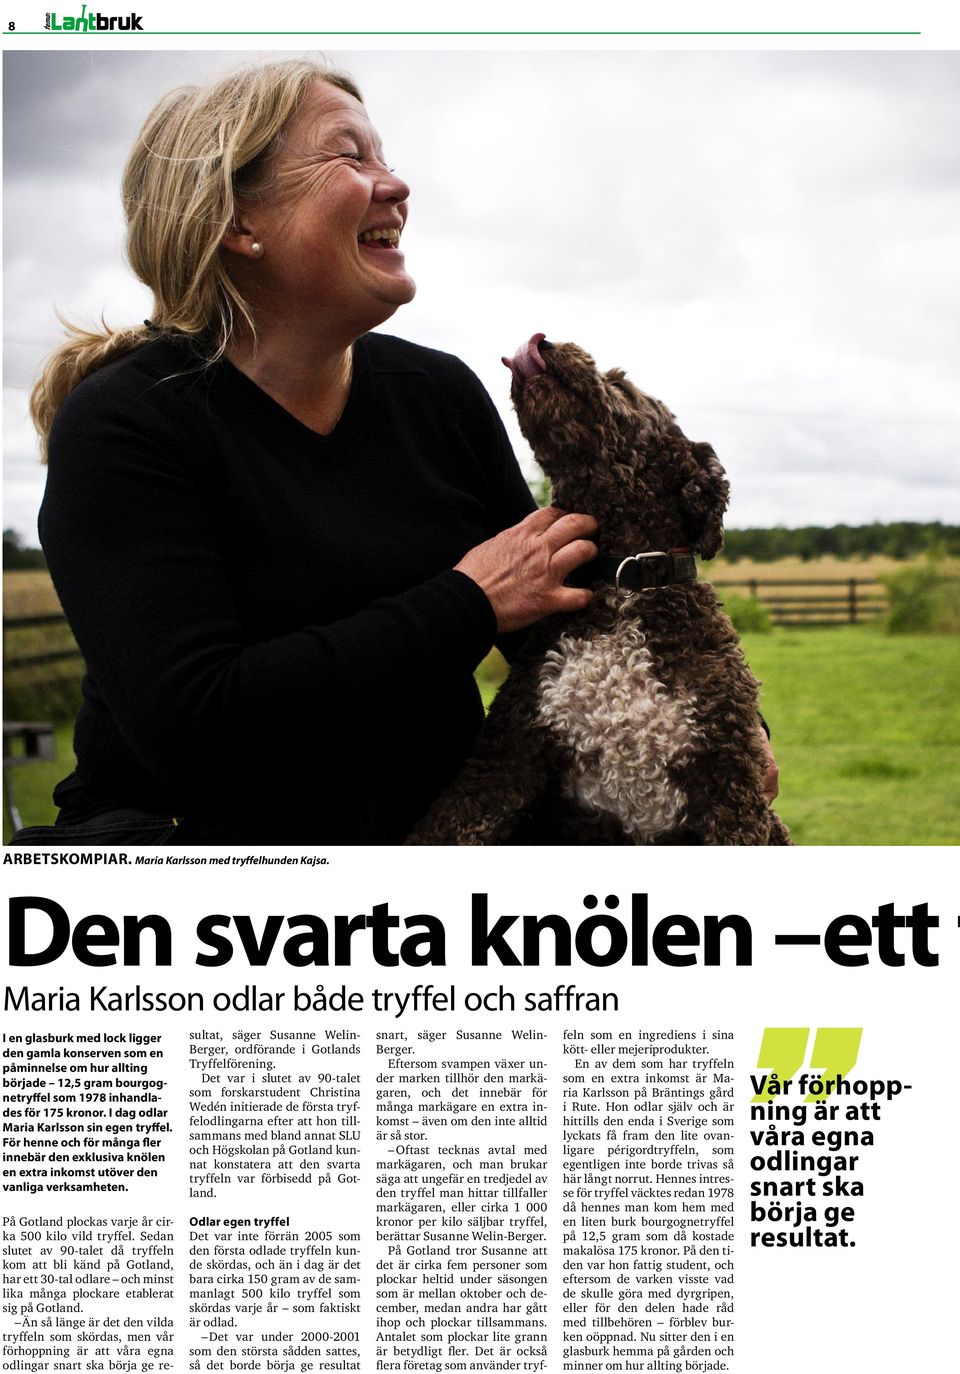 I dag odlar Maria Karlsson sin egen tryffel. För henne och för många fler innebär den exklusiva knölen en extra inkomst utöver den vanliga verksamheten.